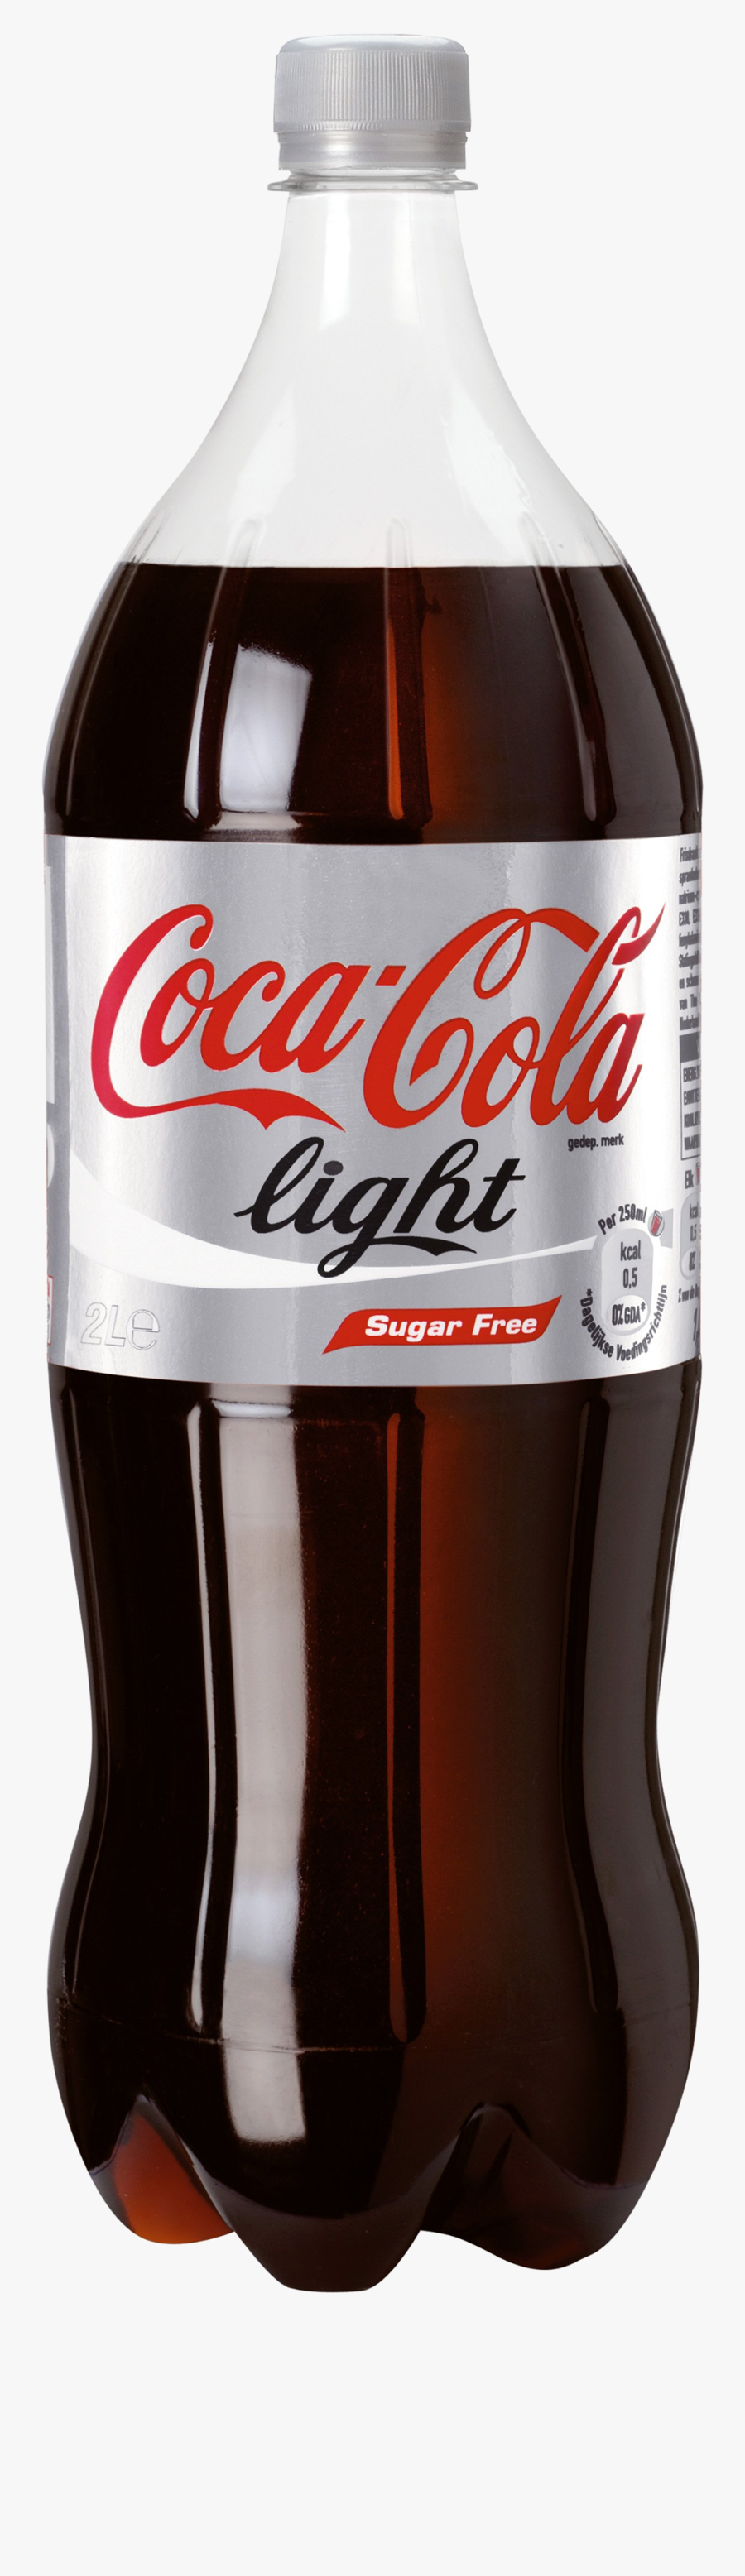 Diet-soda - Coca Cola Light Bottle Png, Transparent Clipart